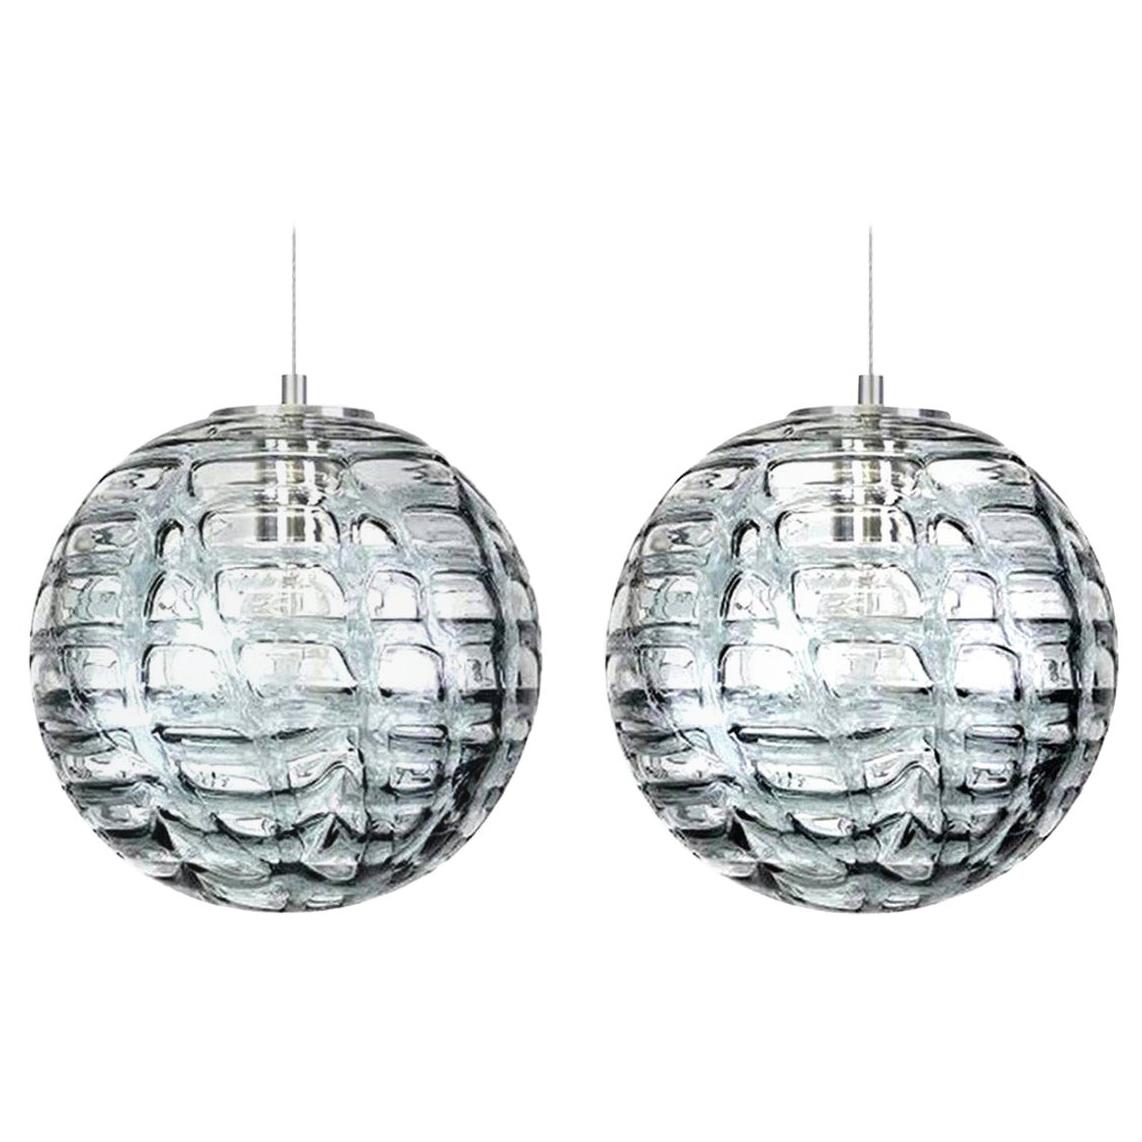 Exceptionnelle paire de lampes à suspension haut de gamme en verre de Murano gris de style Venini des années 1960